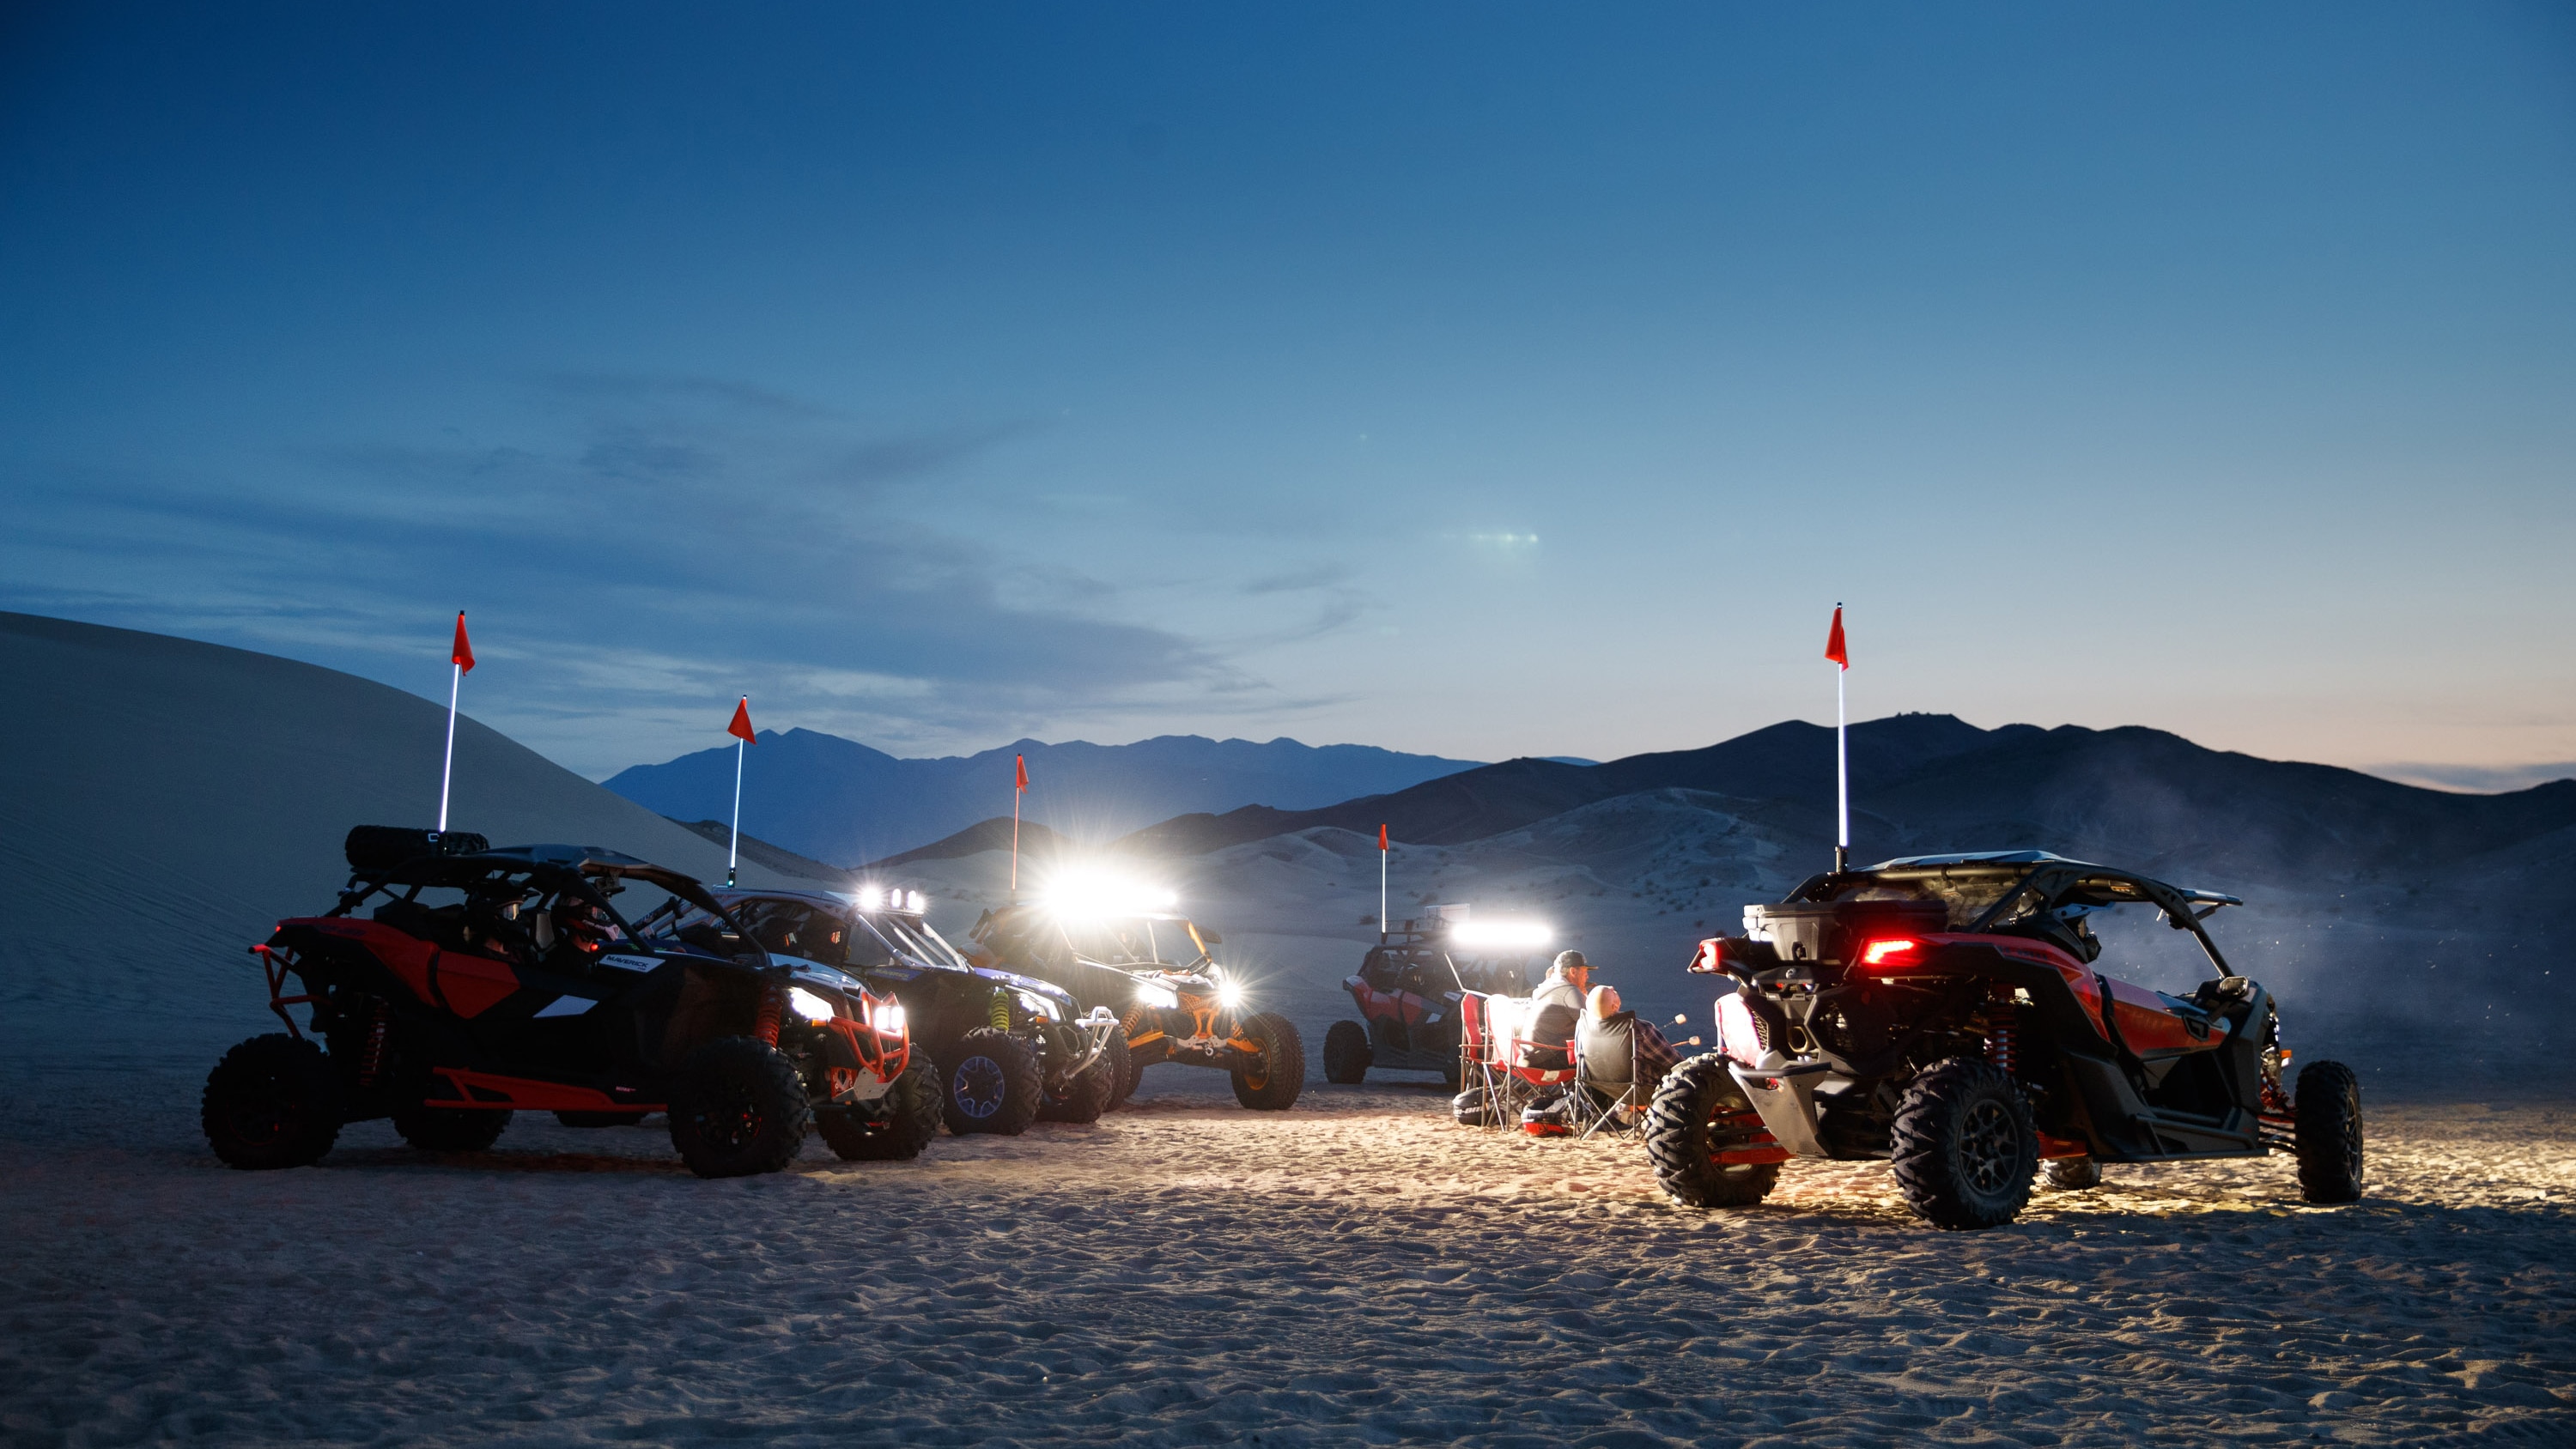  Pet Maverickovih modela noću u pustinji